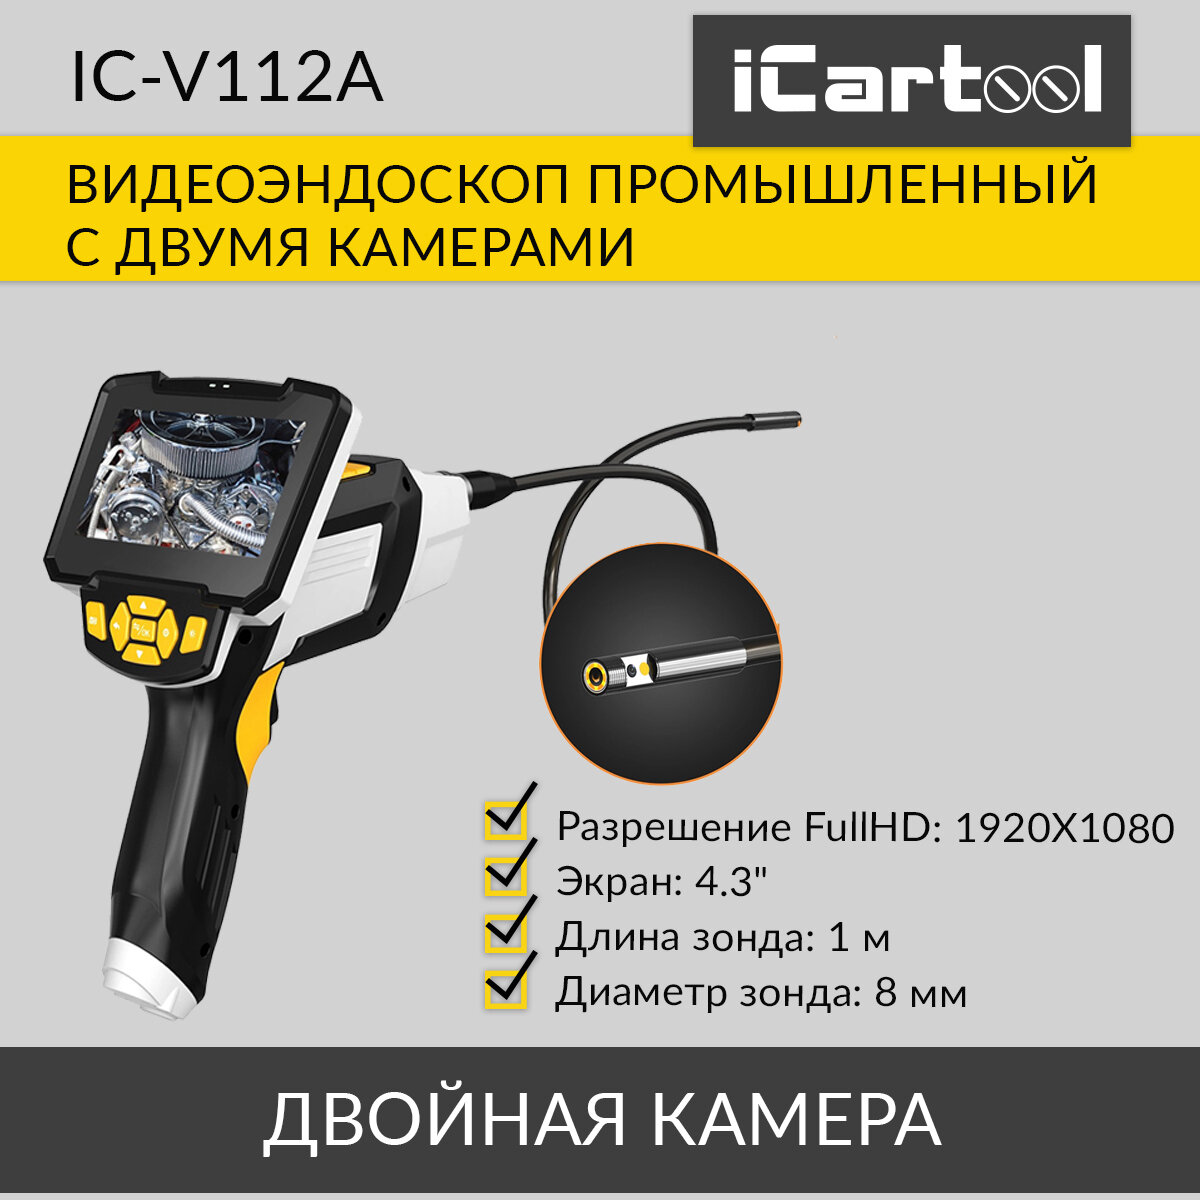 Промышленный видеоэндоскоп iCartool 4.3", 1Мп, Dual Lens, 1280х720, 1м, 8мм сменный зонд IC-V112A